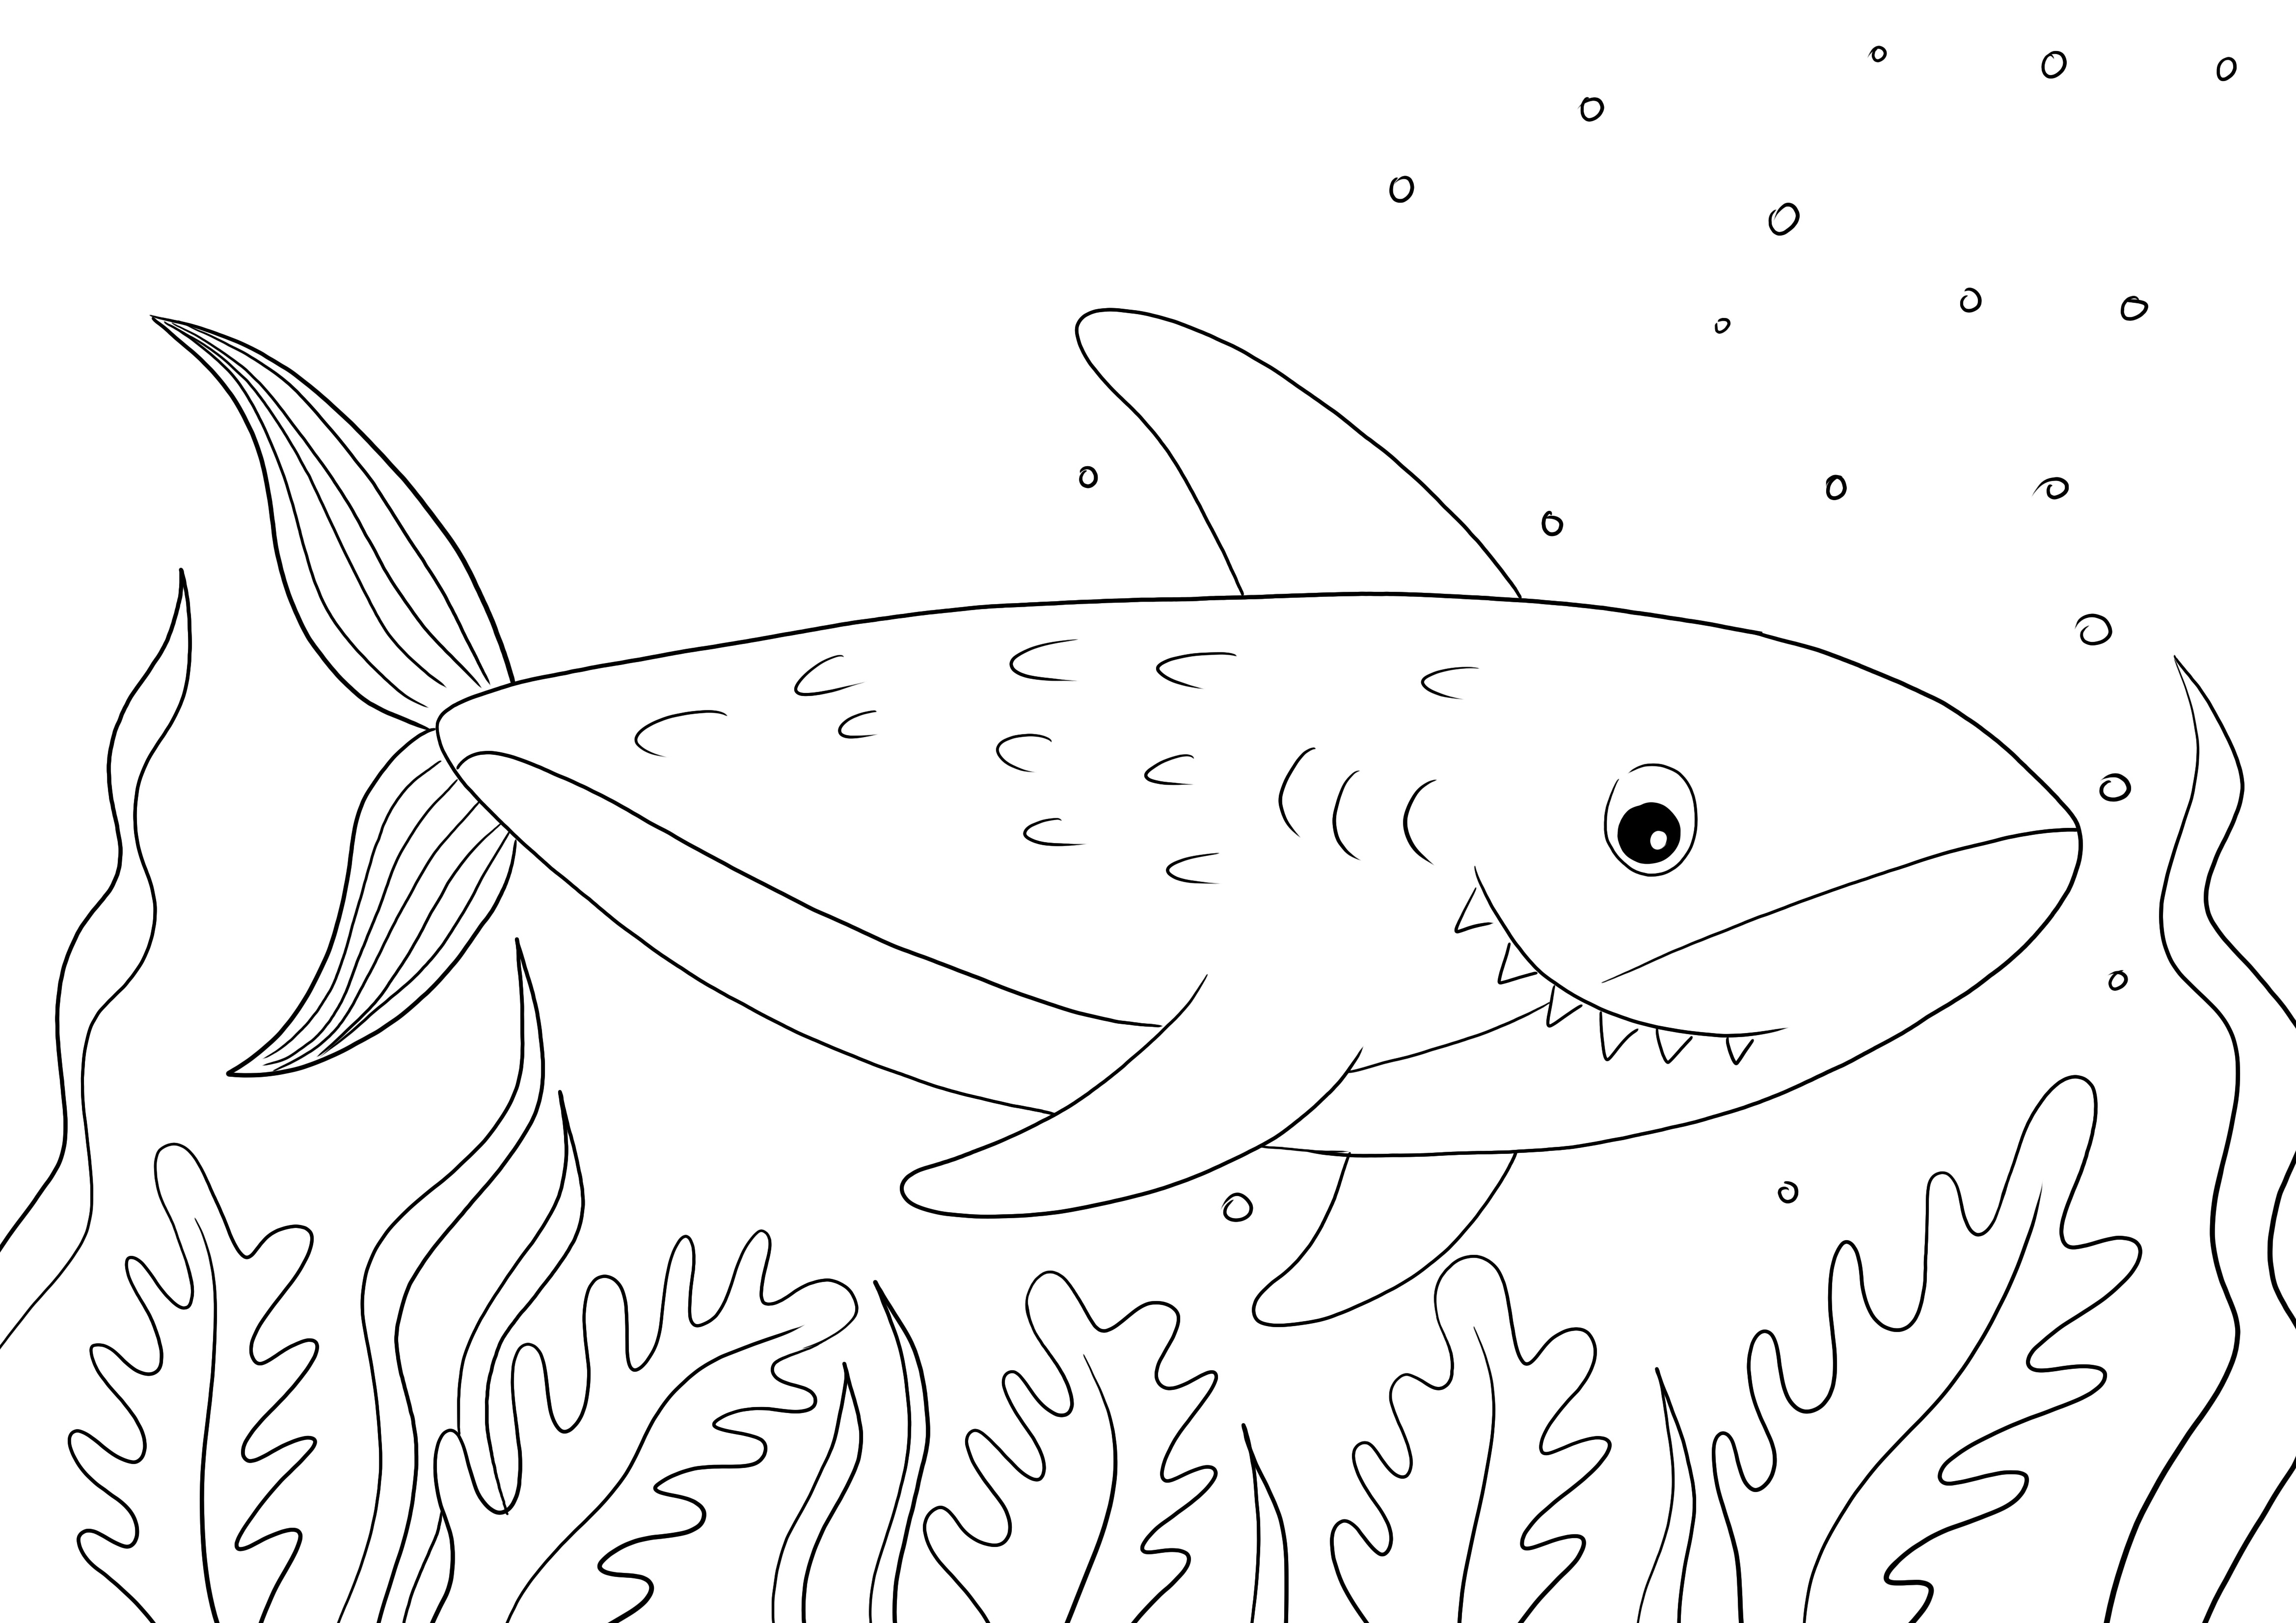 Einfaches und kostenloses Drucken einer Hai-Malseite für Kinder, um mehr über Meerestiere zu lernen